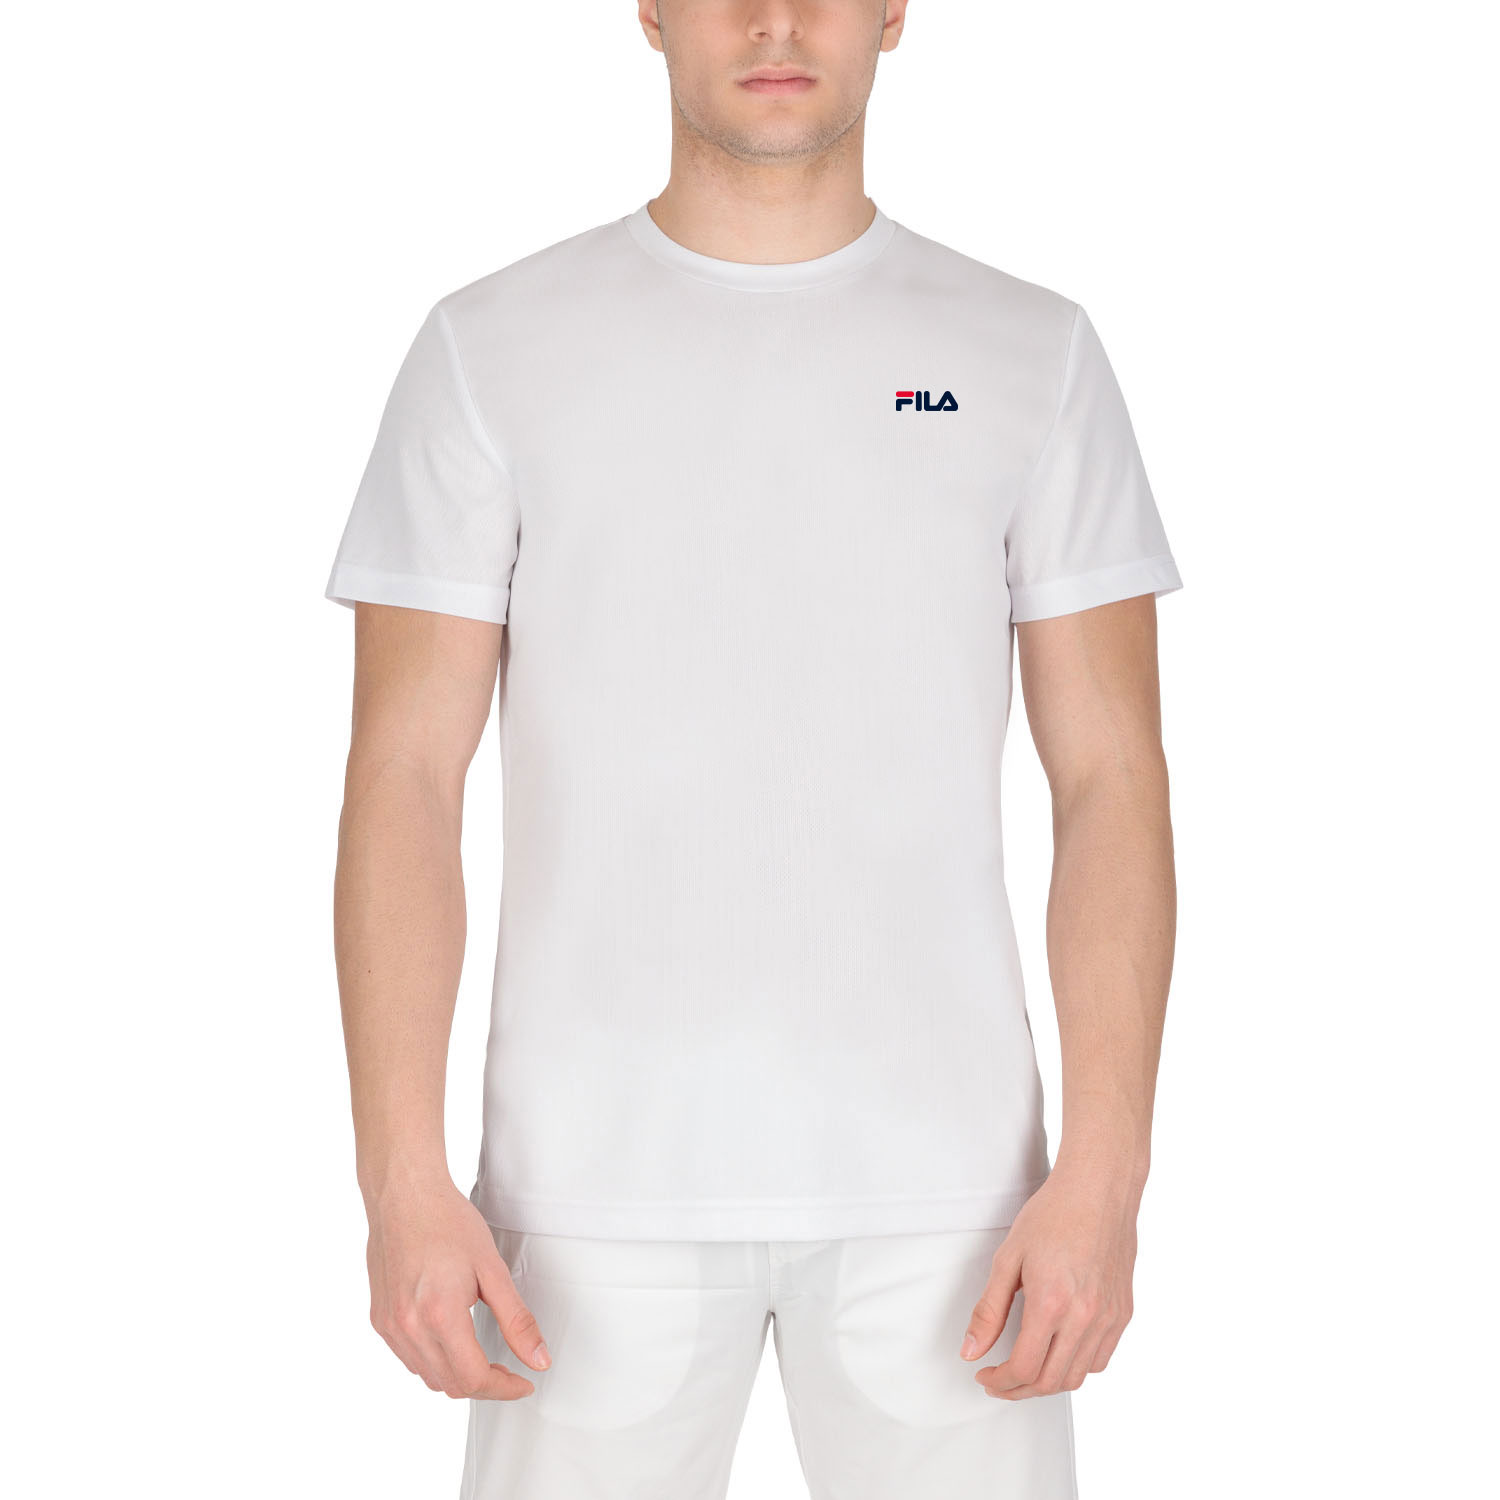 Fila Logo Camiseta - White